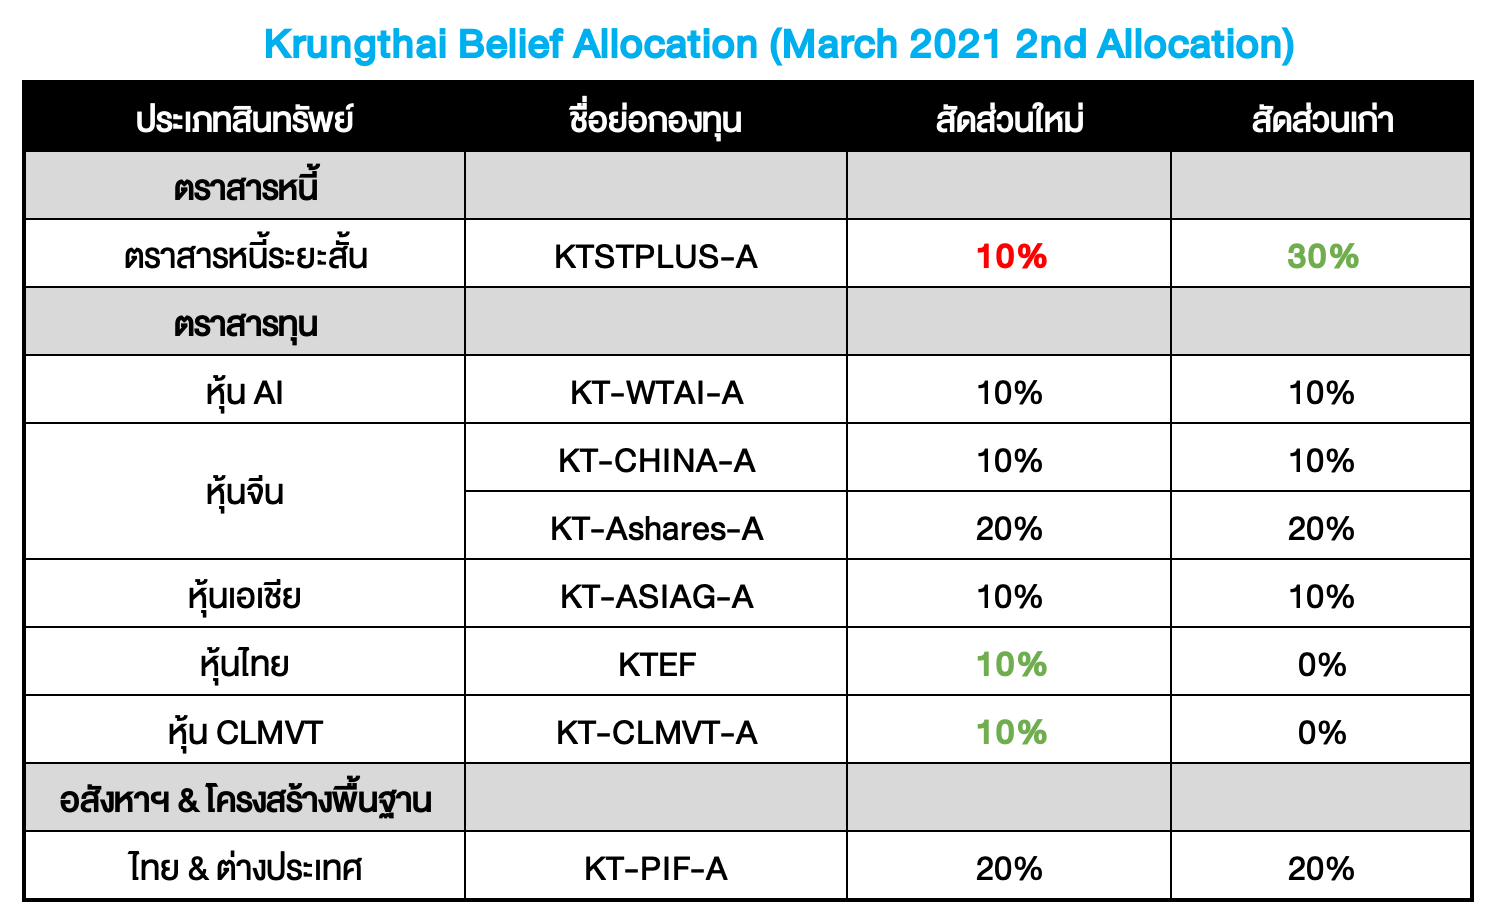 Krungthai Belief Allocation ปรับพอร์ตเดือน มี.ค. 2021 (ครั้งที่ 2) : แผนที่ลงทุน